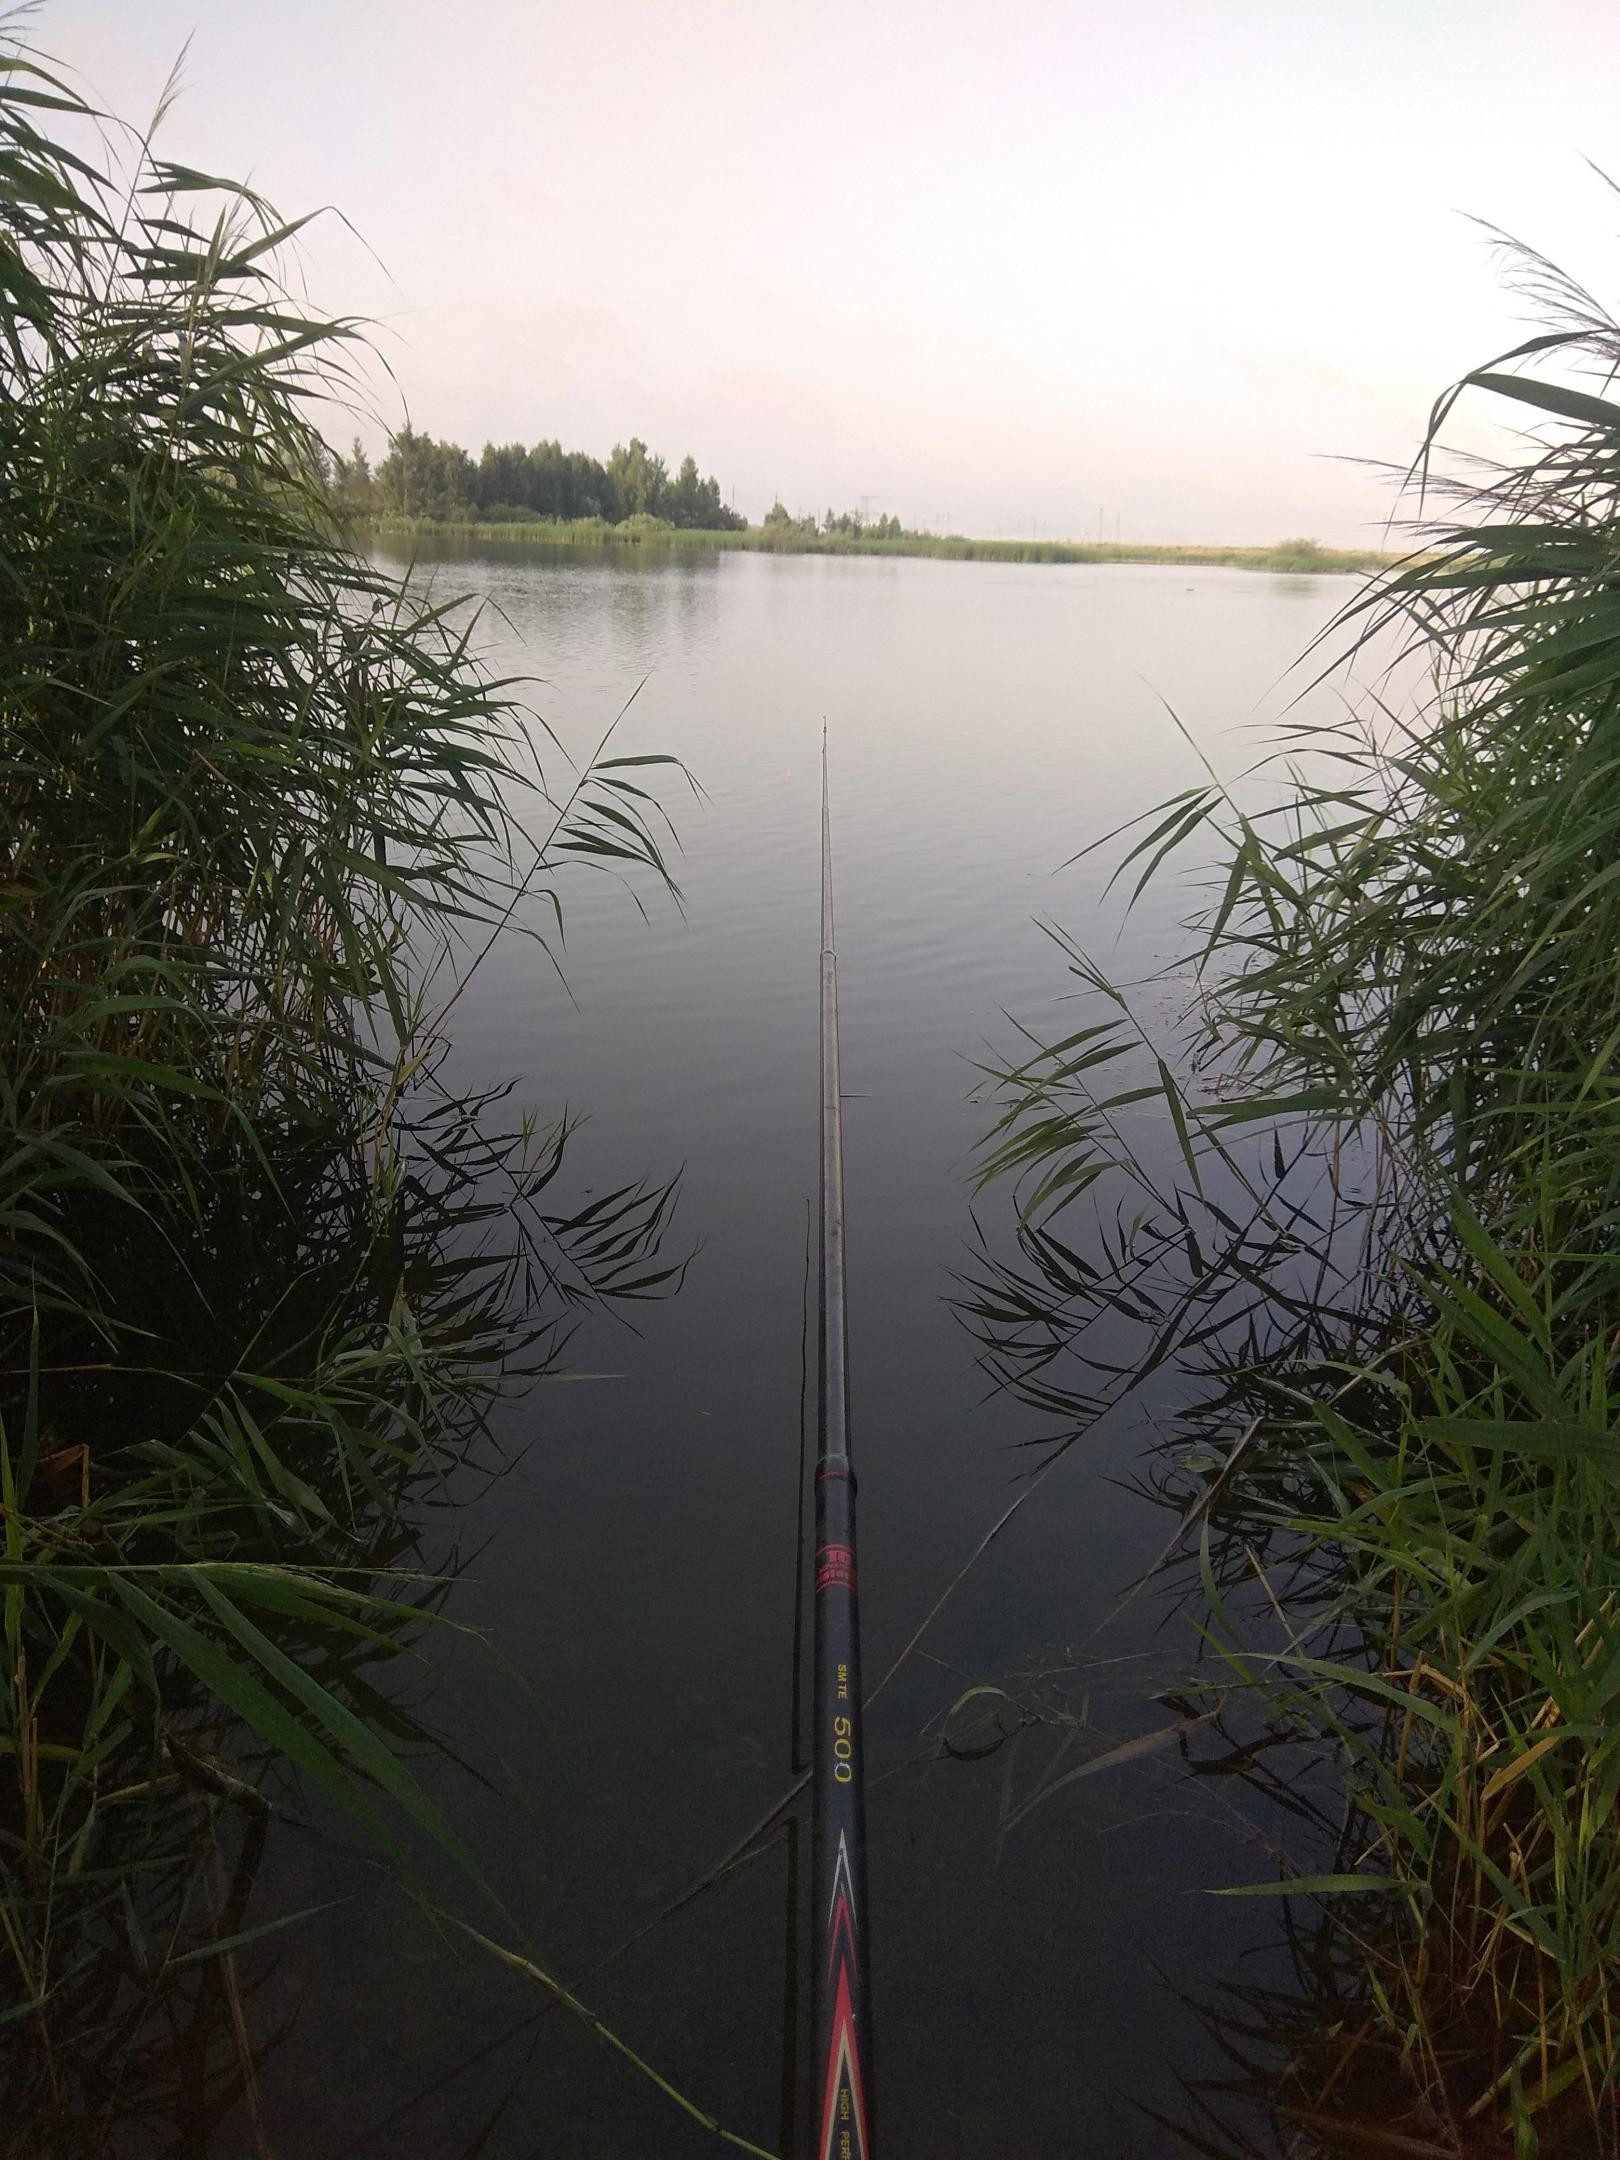  Сегодня с утра проехал немного по водоемам. На ... | Отчеты о рыбалке в Беларуси